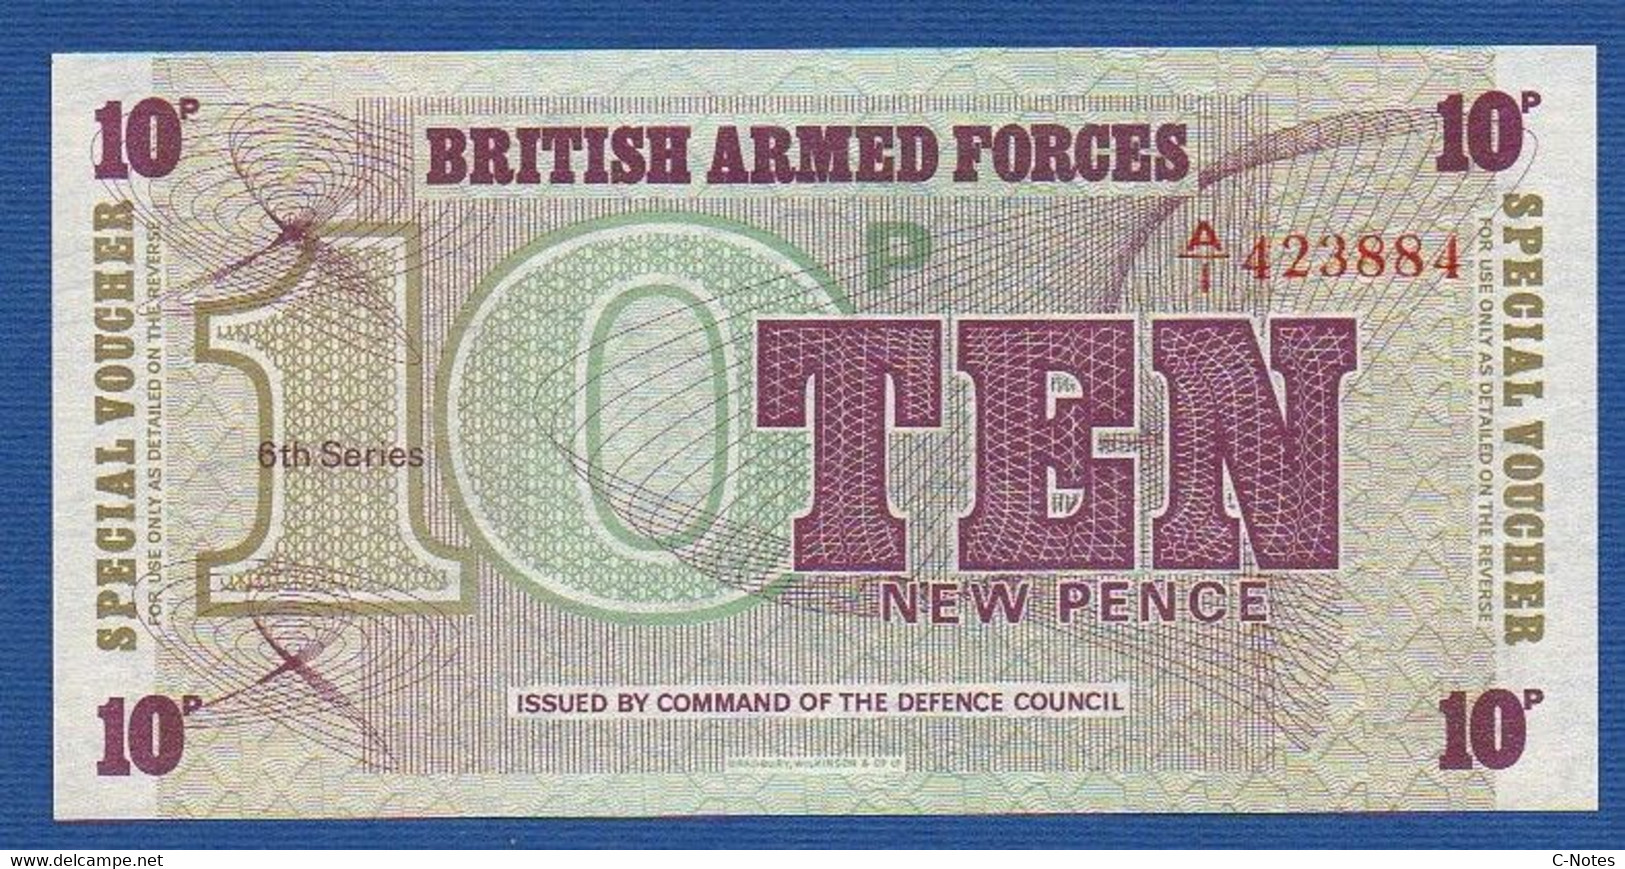 GREAT BRITAIN - P.M48 – 10 New Pence ND (1972) UNC, Serie A/1 423884, Printer Bradbury Wilkinson, New Malden - Fuerzas Armadas Británicas & Recibos Especiales